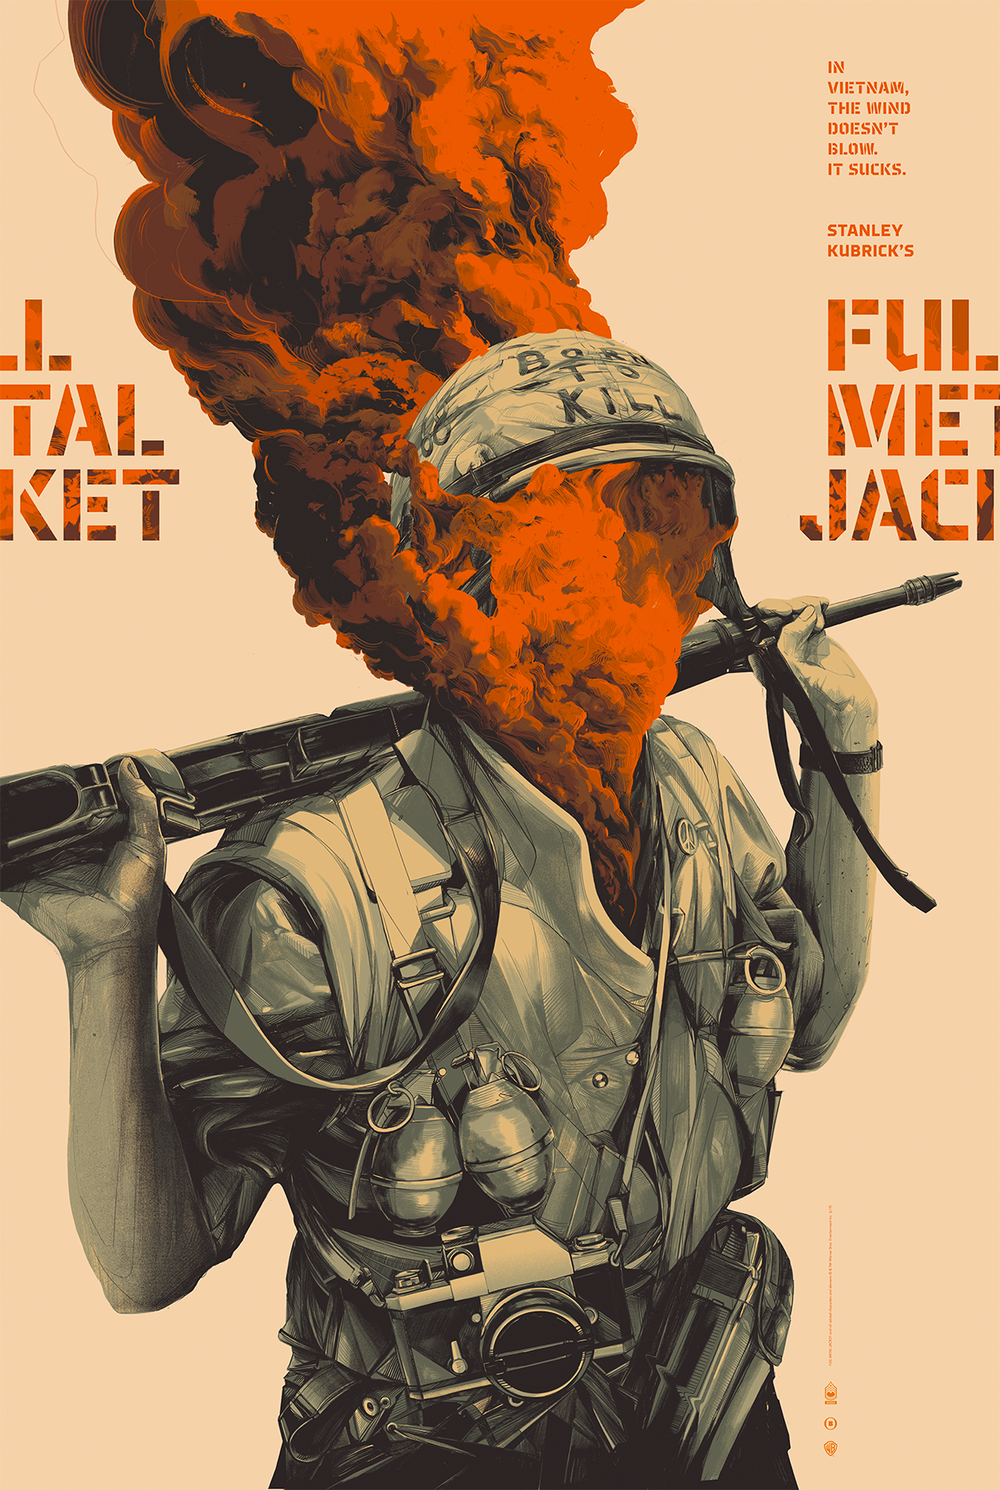 Tak for din hjælp Indgang erklære Full Metal Jacket by Oliver Barrett | Movie Poster | Screen Print |  sceneprints.com